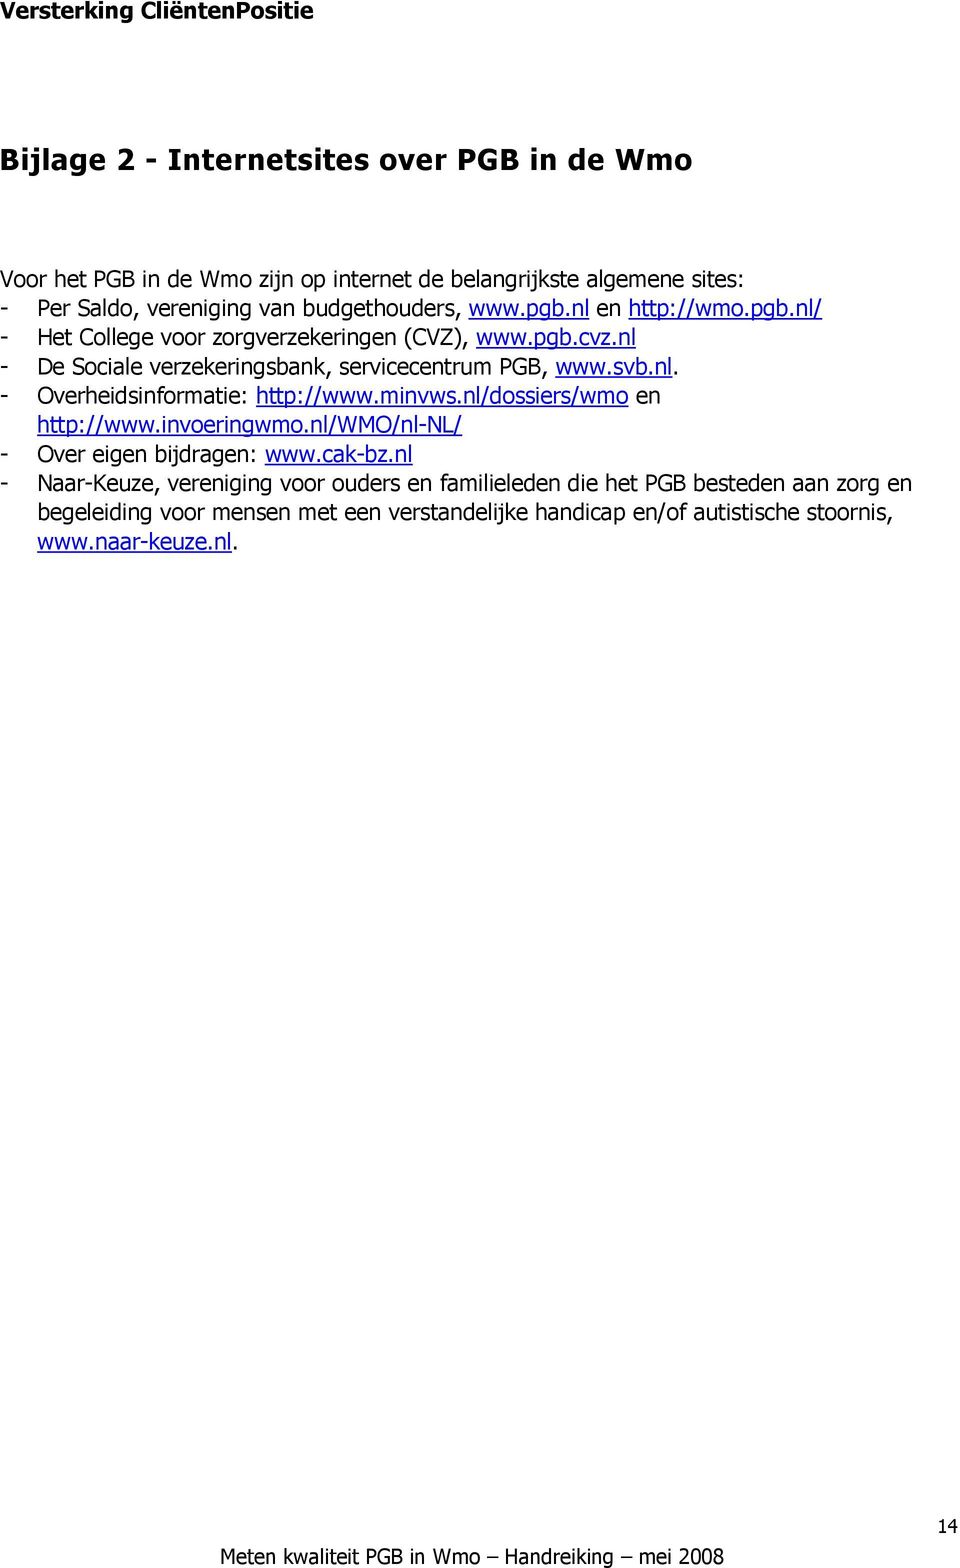 minvws.nl/dossiers/wmo en http://www.invoeringwmo.nl/wmo/nl-nl/ - Over eigen bijdragen: www.cak-bz.